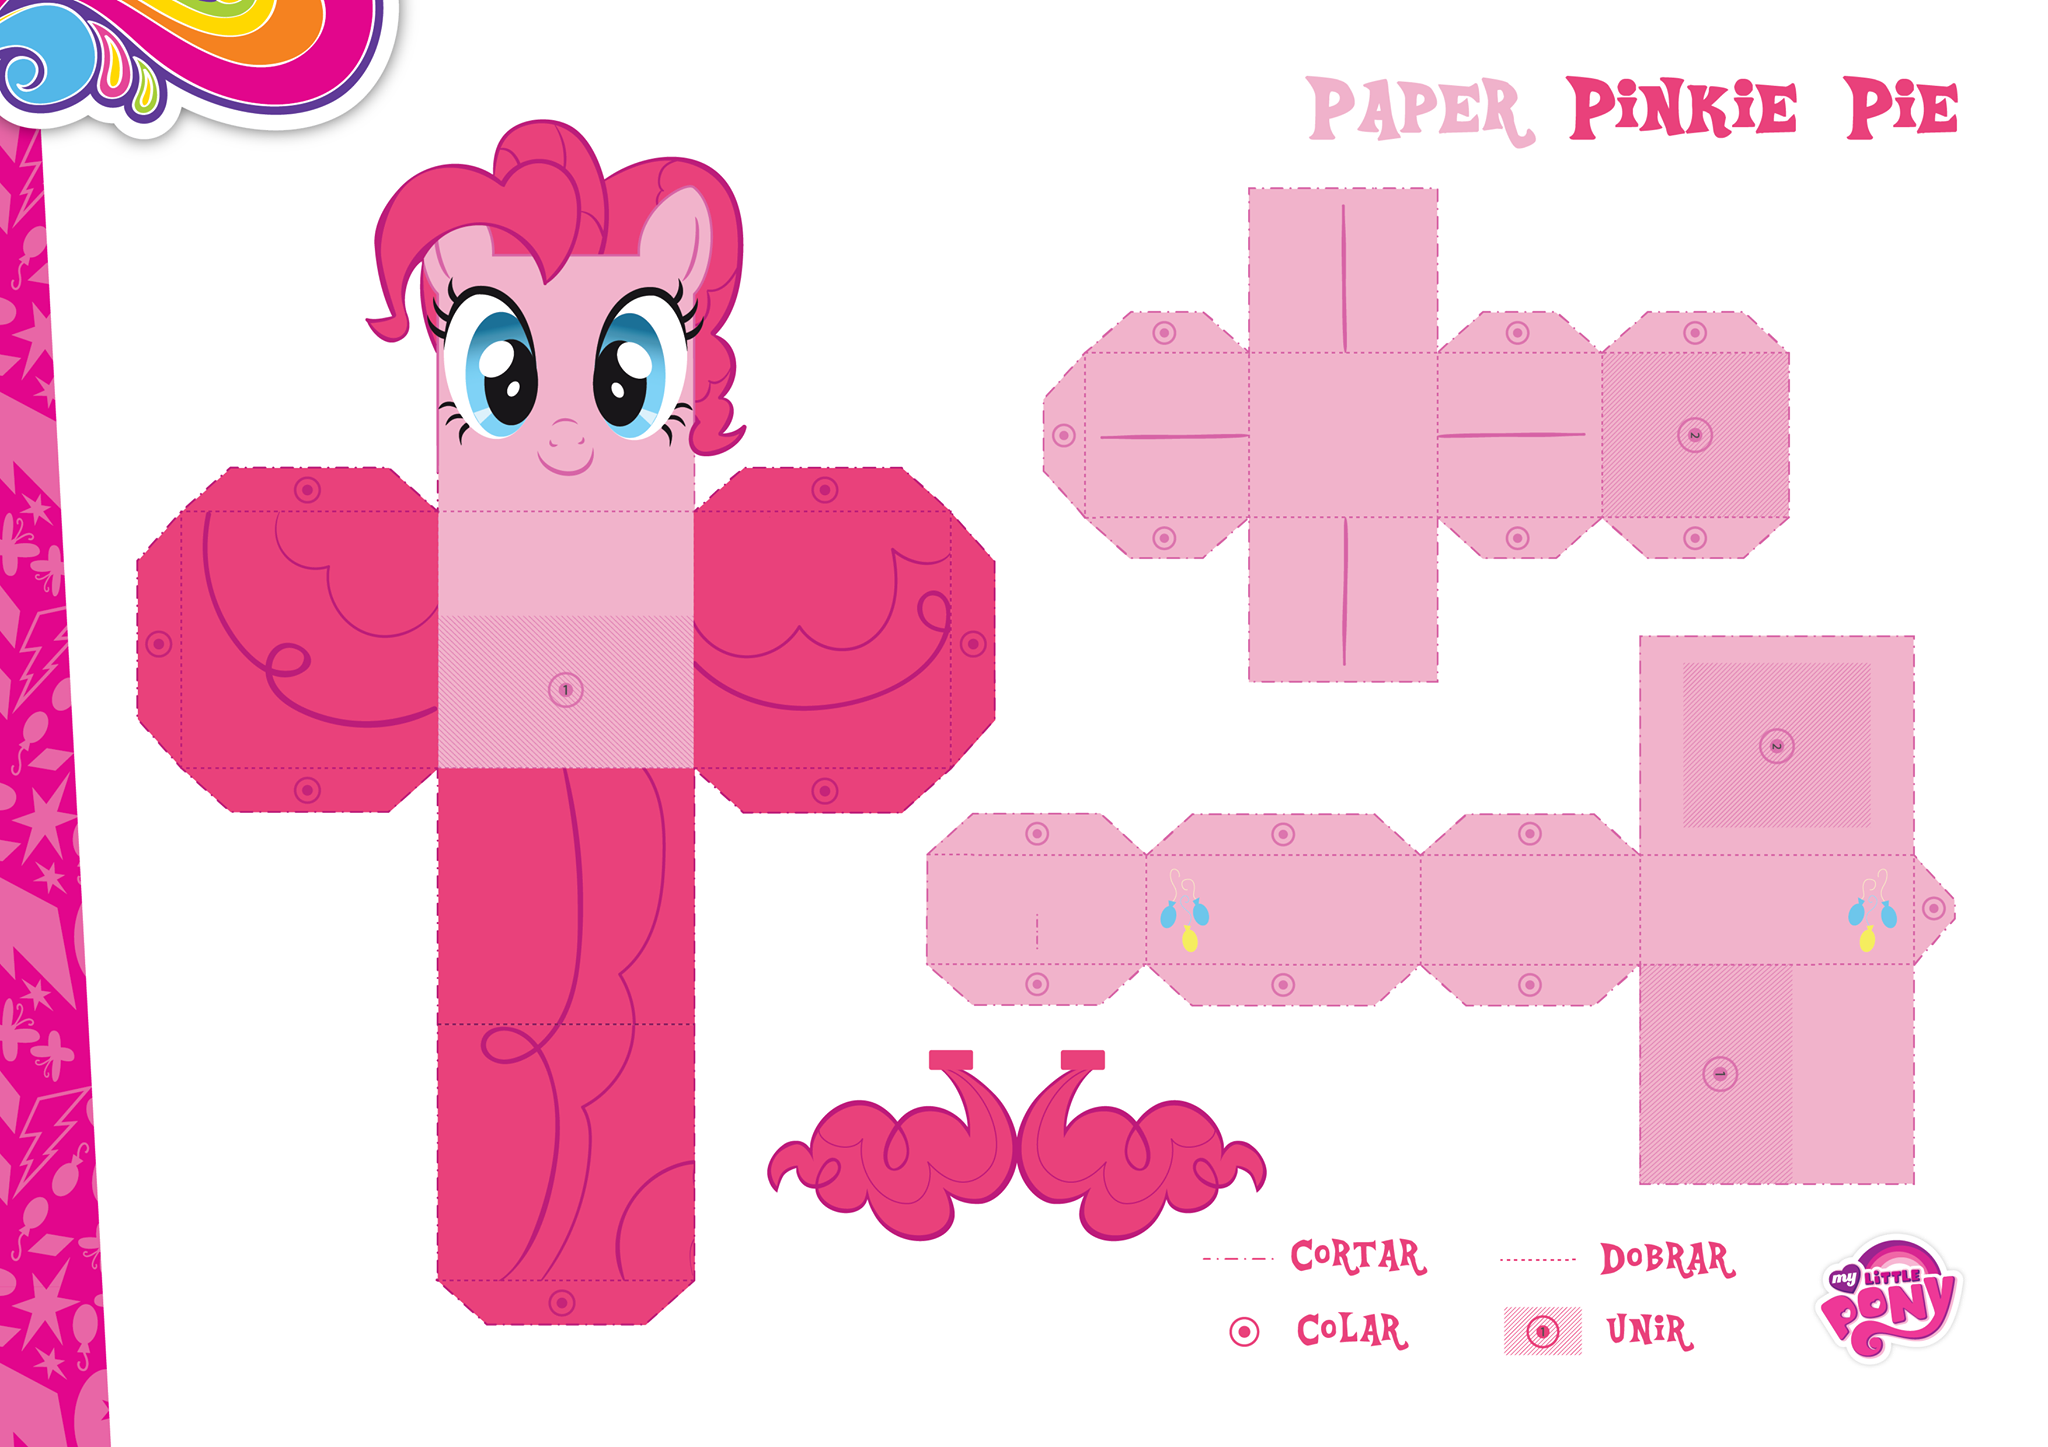 Май литл пони делать пони. Пинки Пай из бумаги. Поделки из бумаги пони. Бумажные фигурки пони. Объемные пони из бумаги.